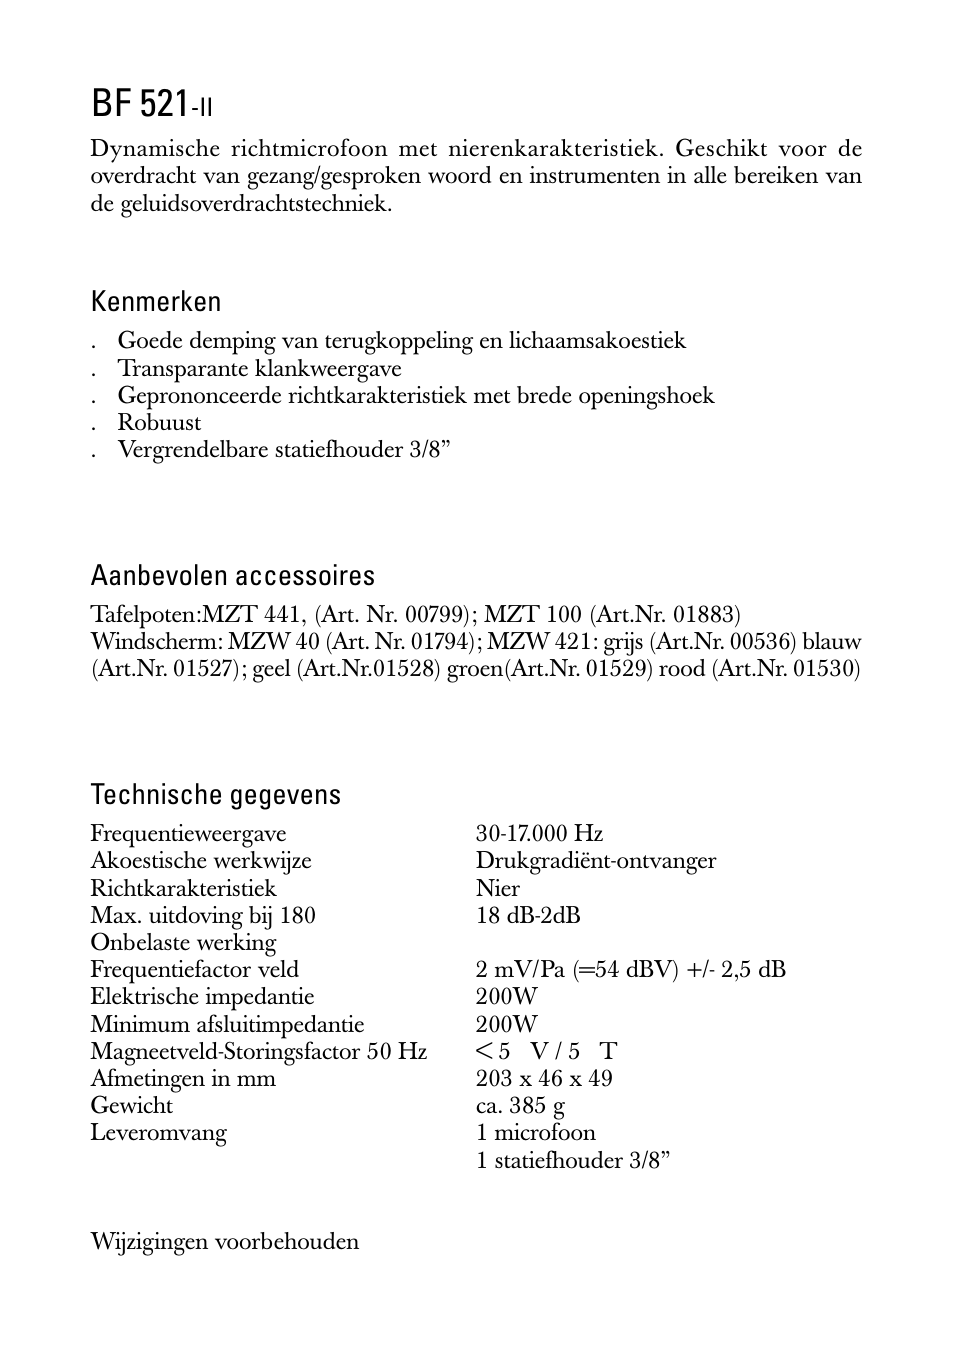 Gebruiksaanwijzing, Bf 521, Kenmerken | Aanbevolen accessoires, Technische gegevens | Sennheiser BF 521-II User Manual | Page 7 / 12